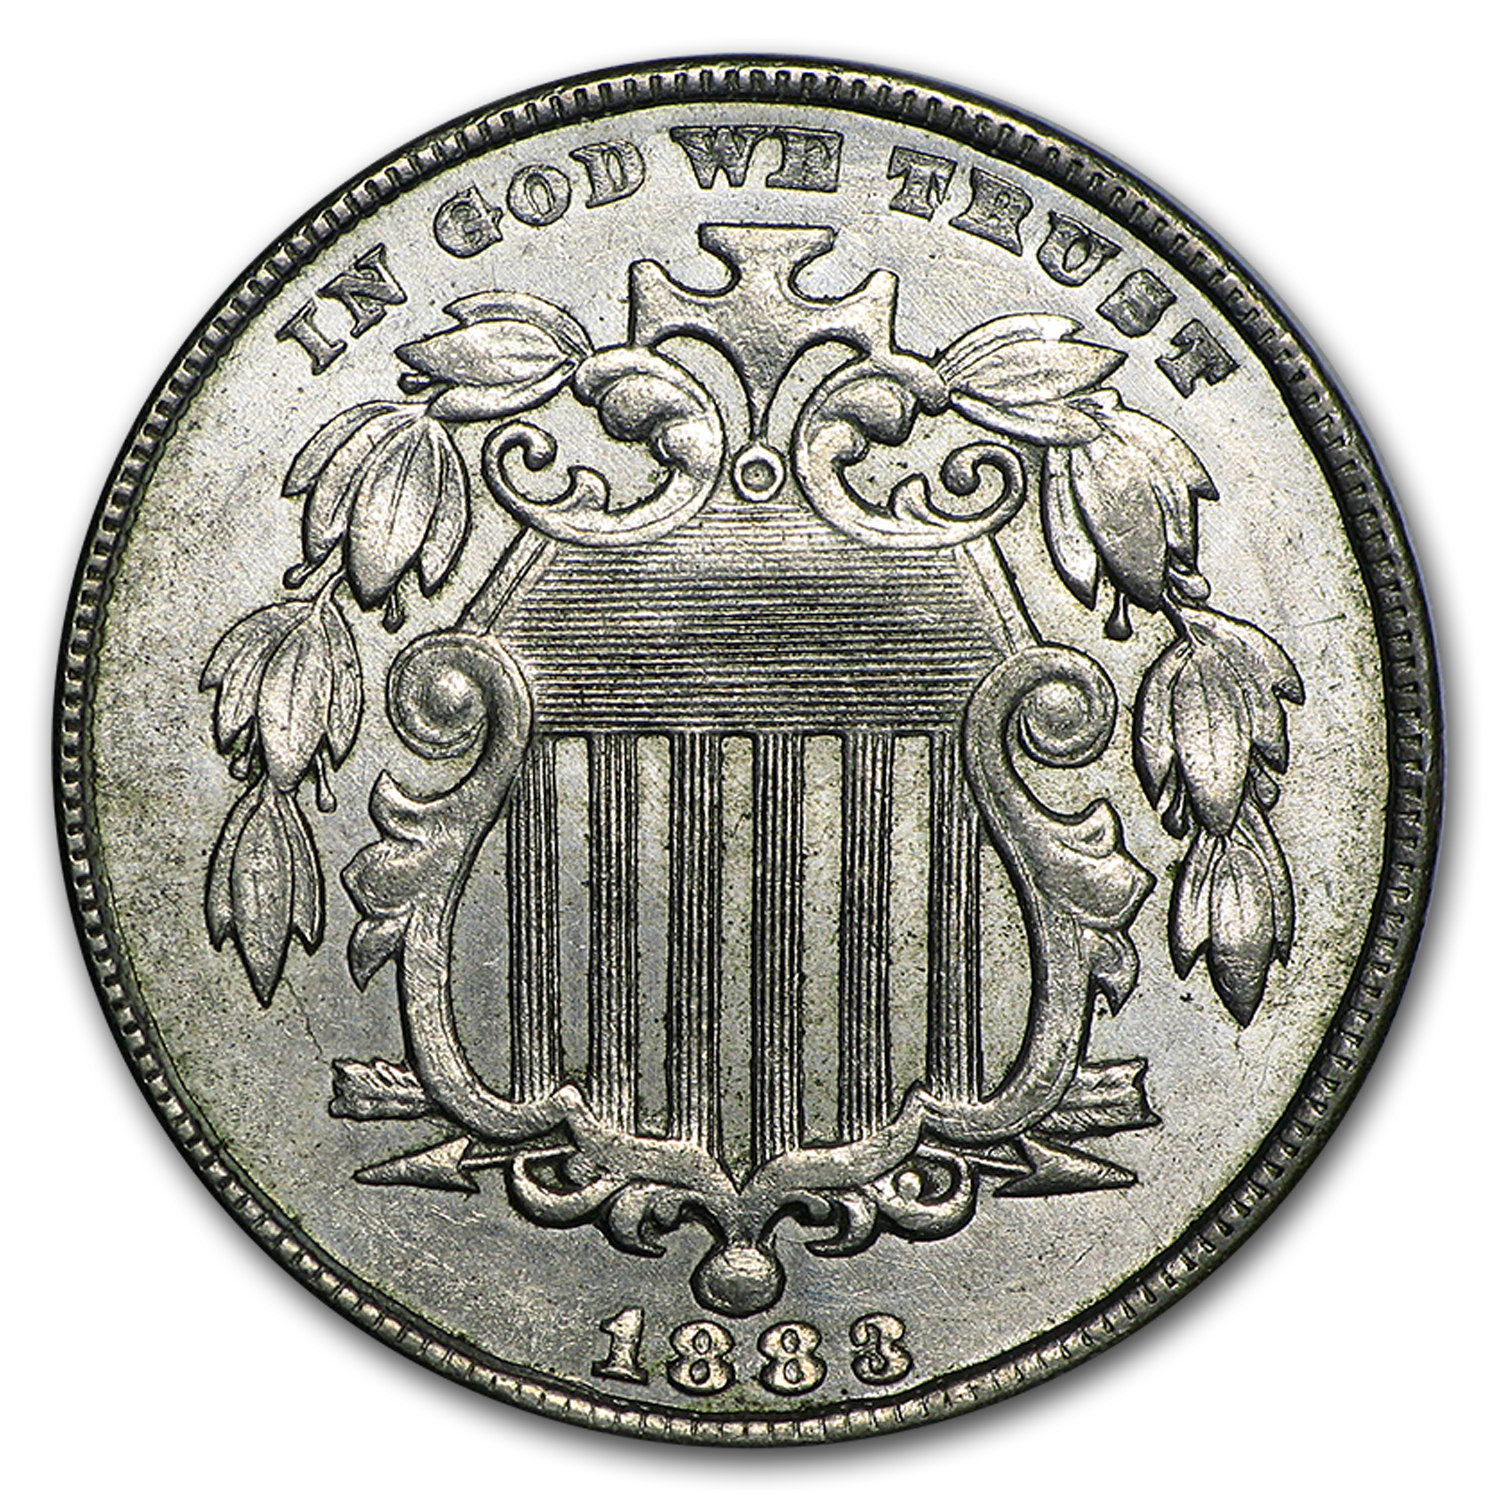 Buy 1883 Shield Nickel BU